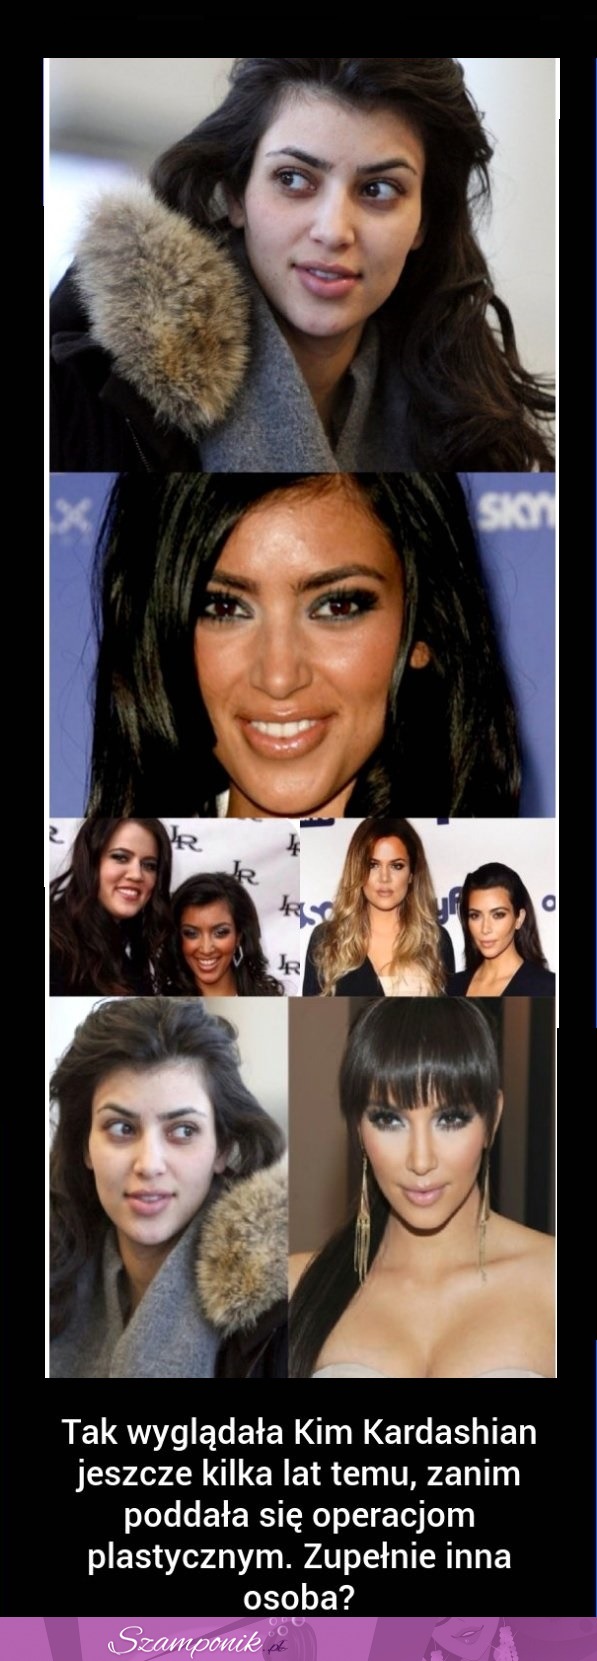 Tak wyglądała Kim Kardashian jeszcze kilka lat temu! Ile ona miała OPERACJI? Zobacz zdjęcia!